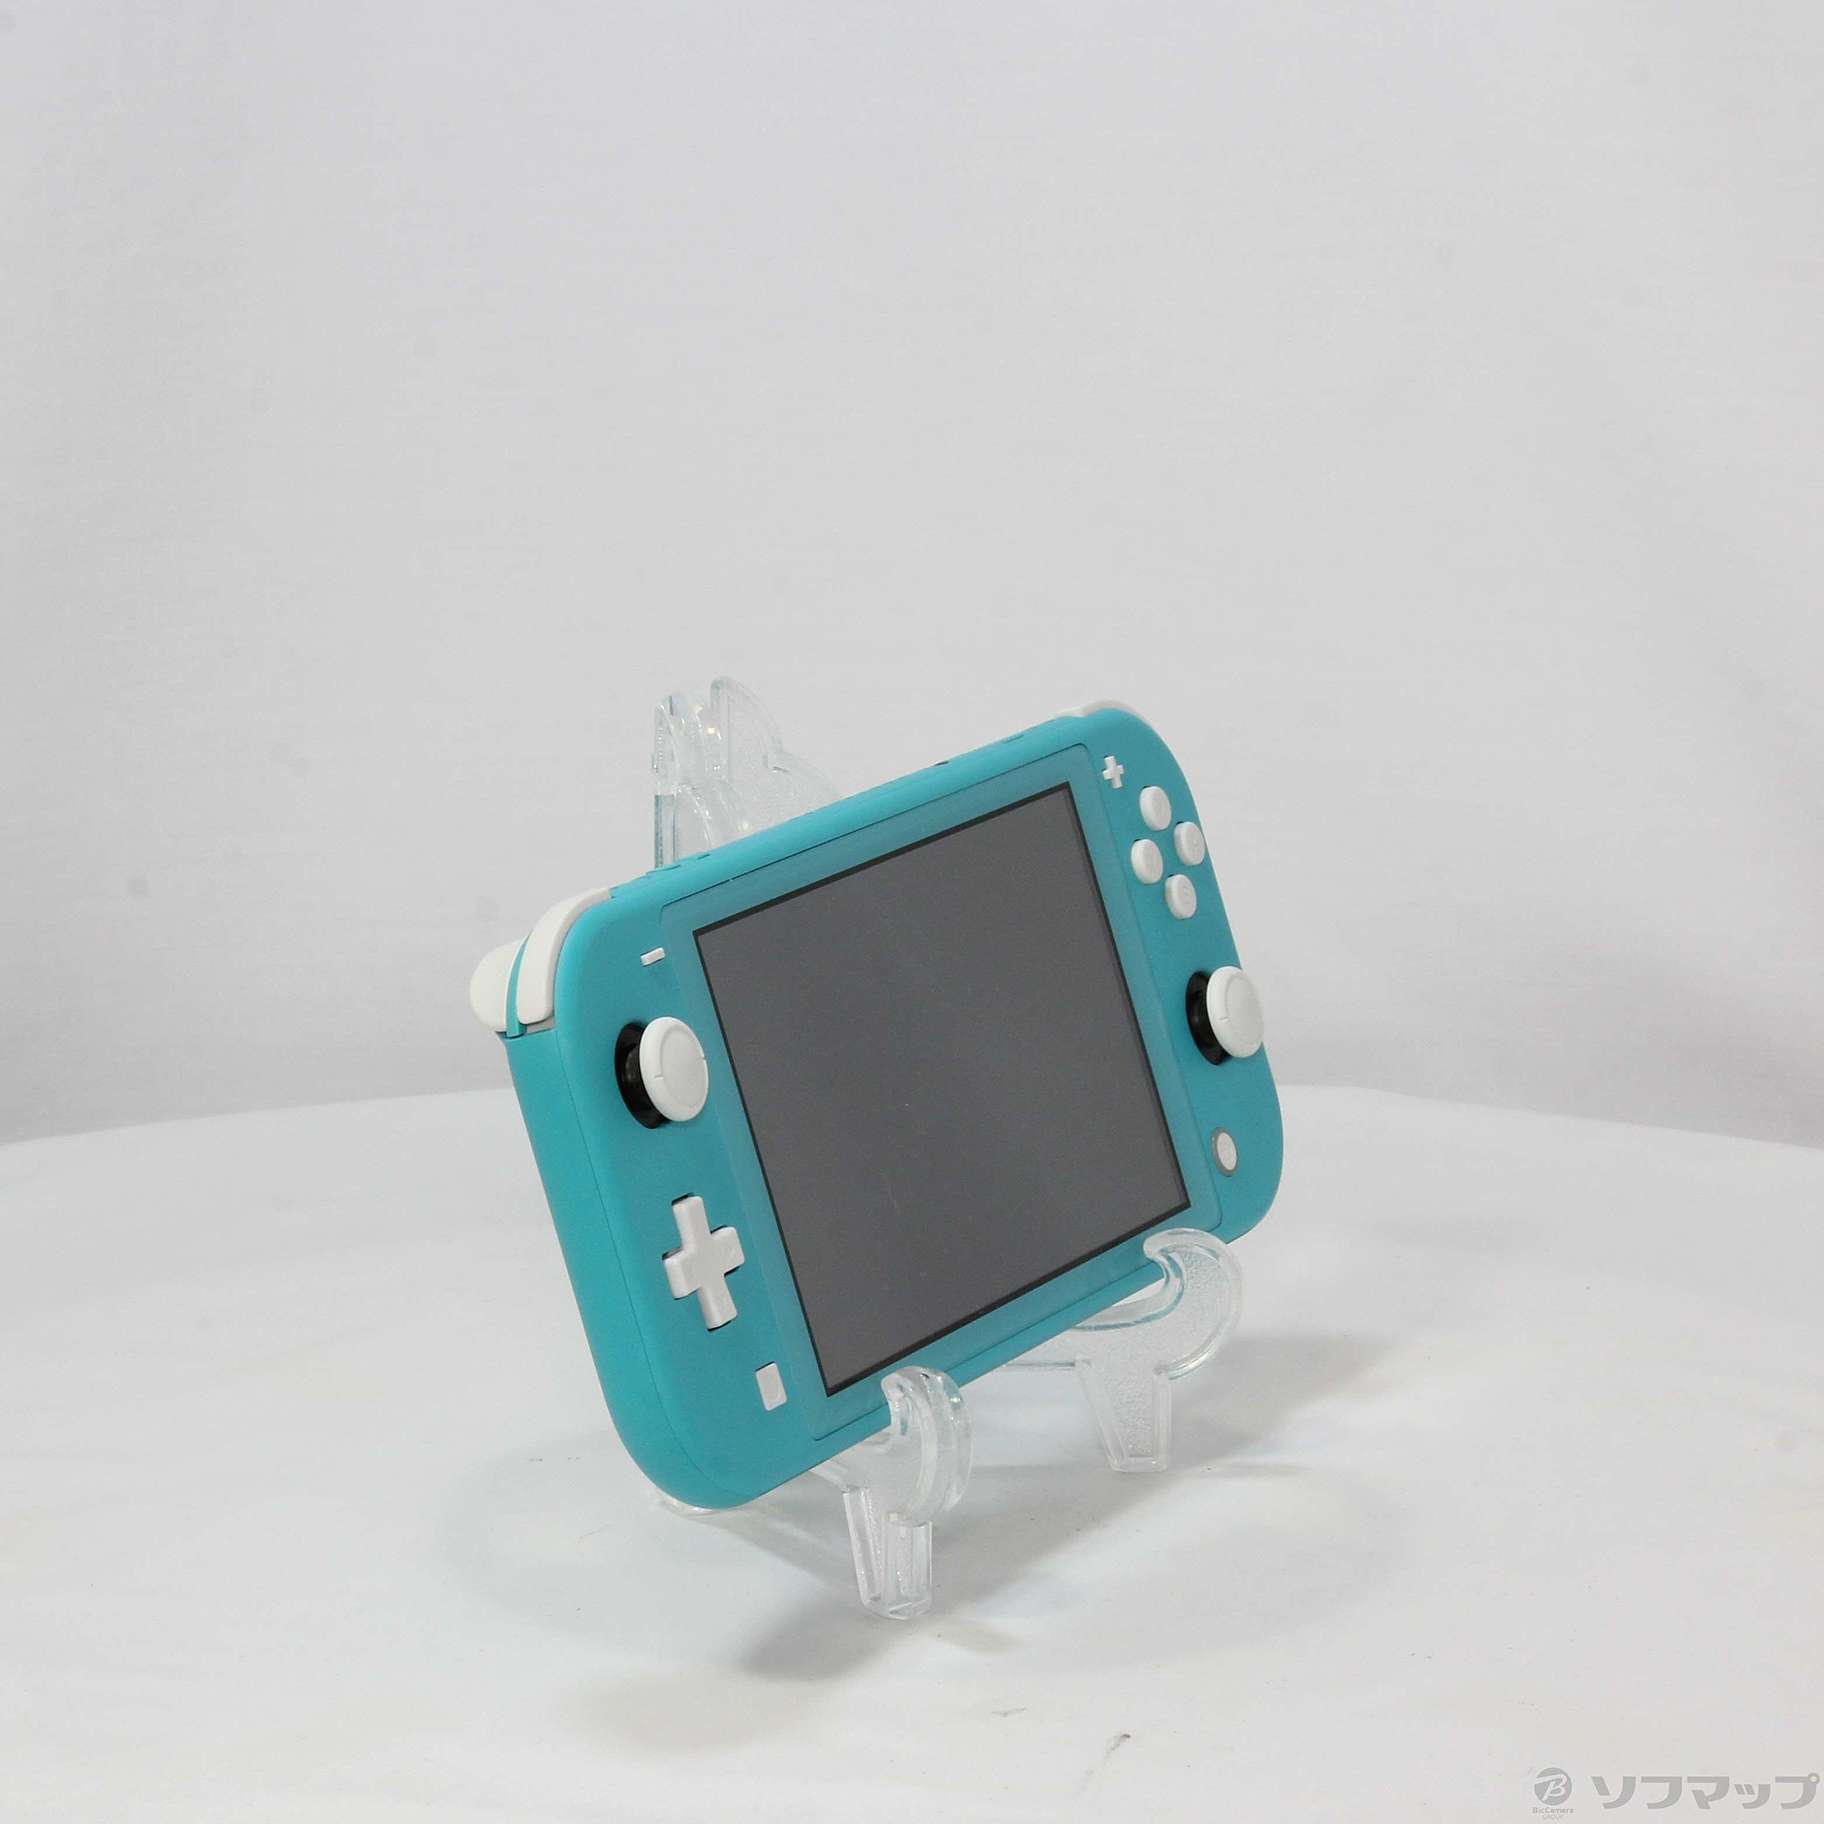 セール対象品 Nintendo Switch Lite ターコイズ ◇07/15(金)値下げ！